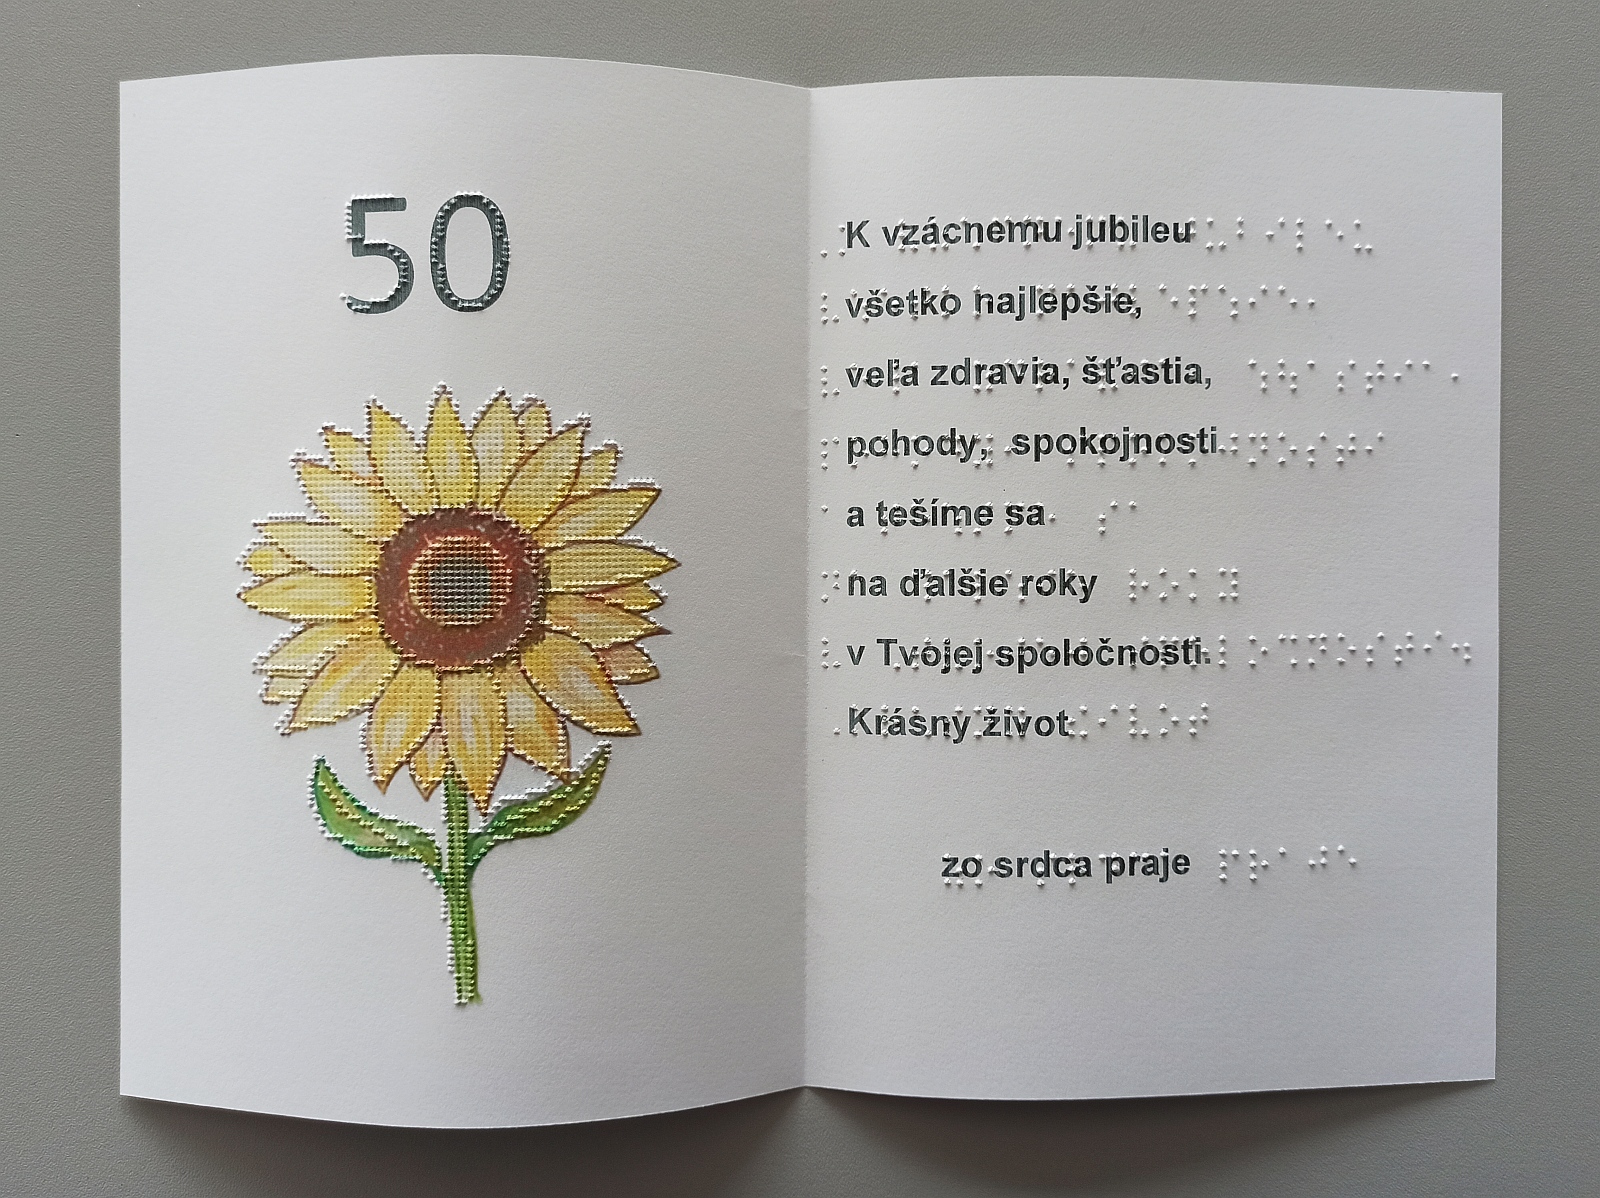 Fotografia pohľadnice v kombinácii brail/čiernotlač. Vybodkovaný obrázok kvetu slnečnice a text v čiernotlači aj braili.